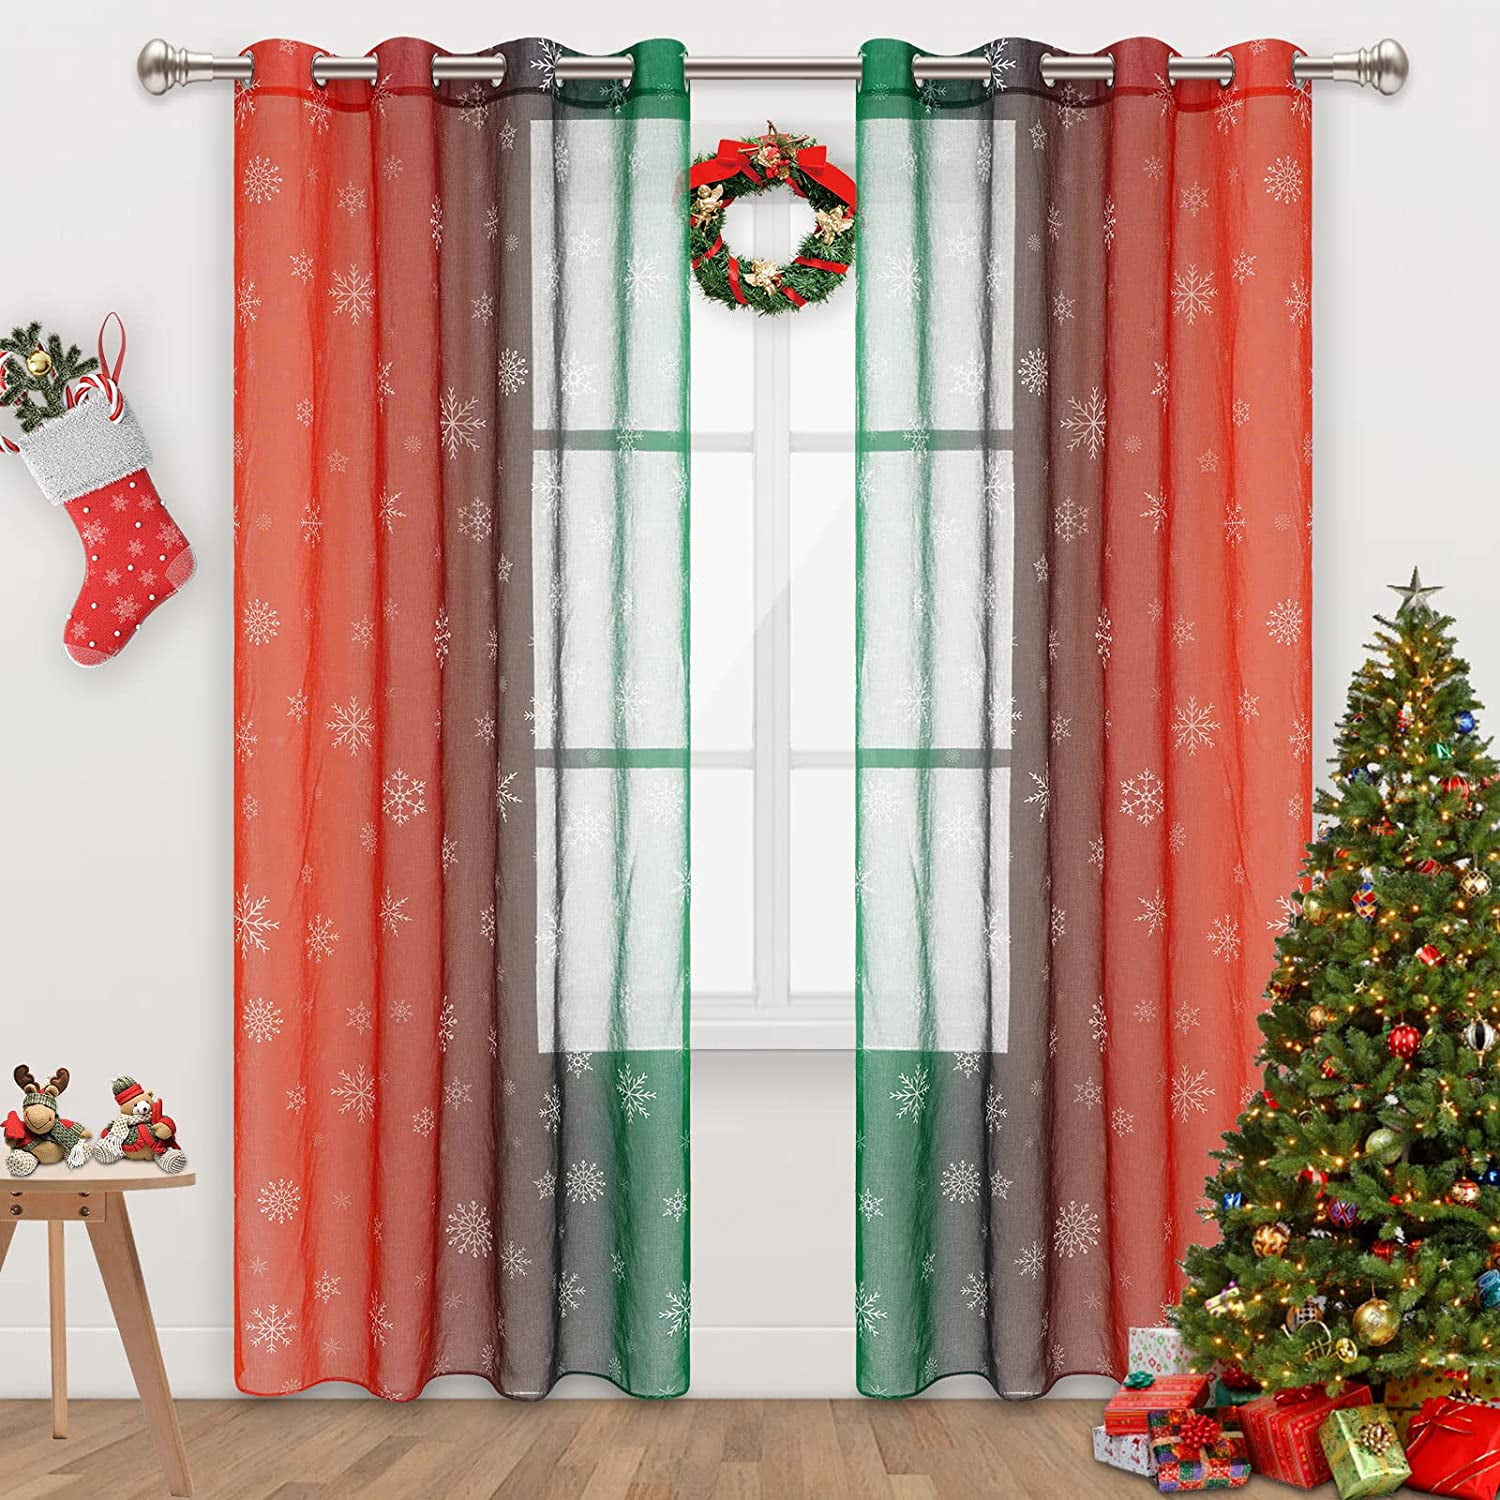 Alishomtll Christmas Sheer Voile Curtain, Light Filtering Grommet ...